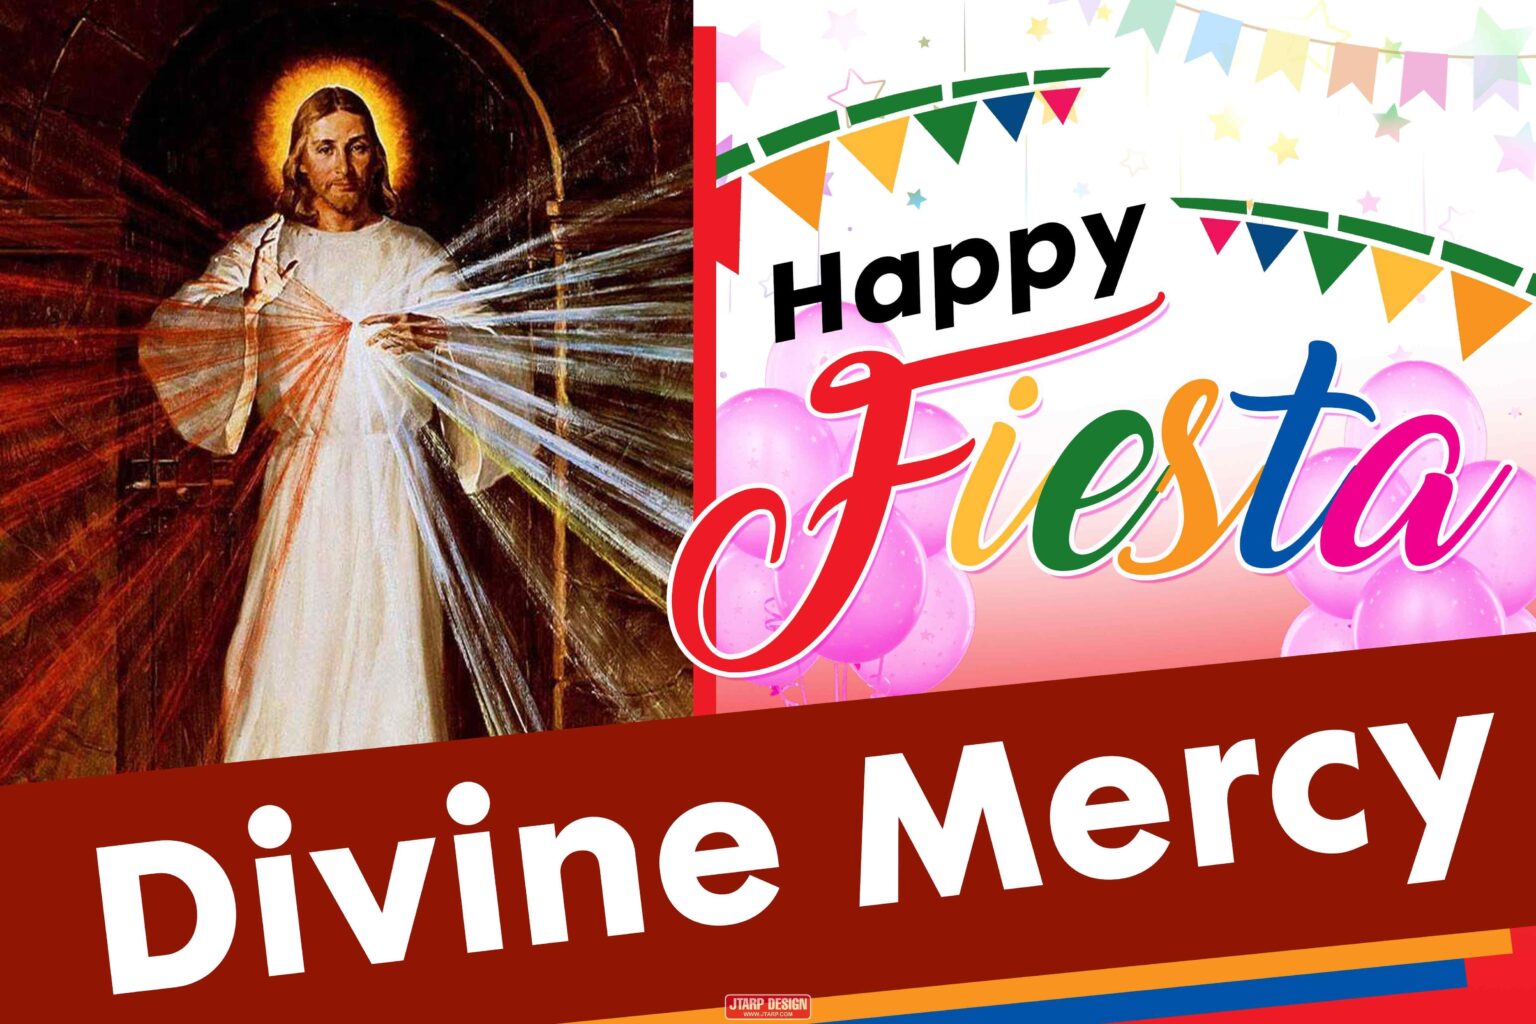 6x4 Happy Feista Divine Mercy